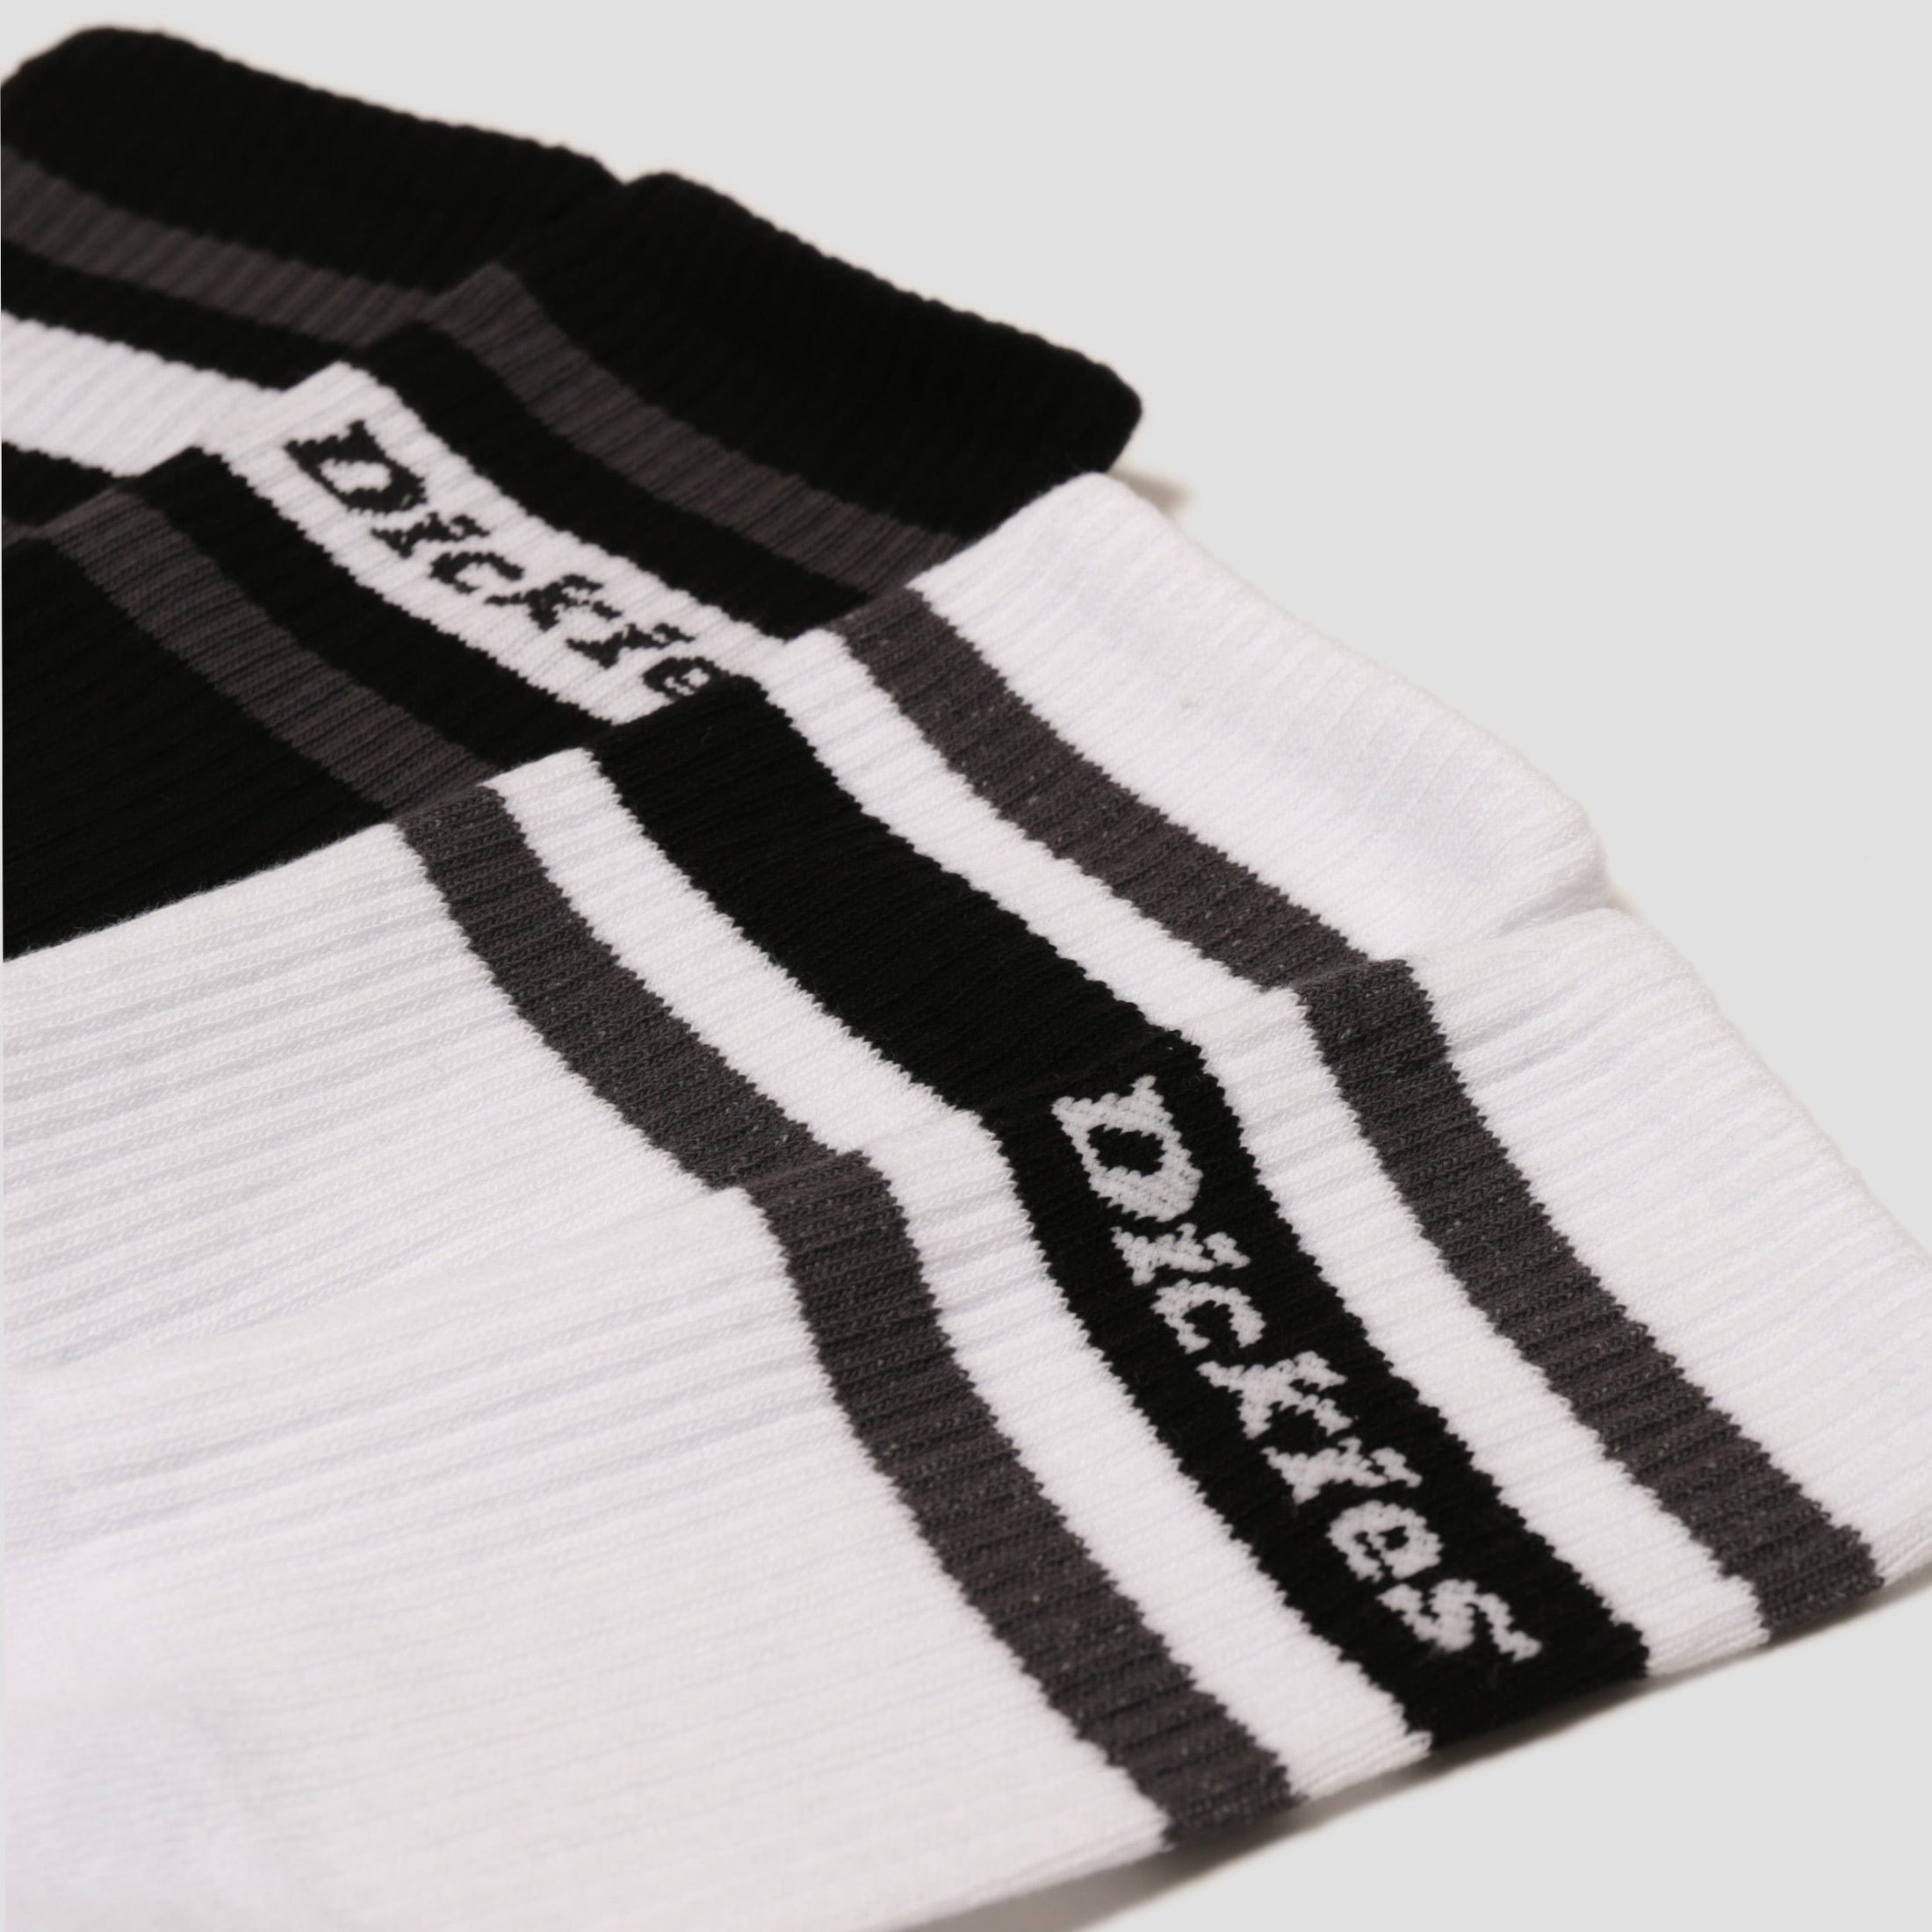 Dickies Genola 2 Pack Socks Black